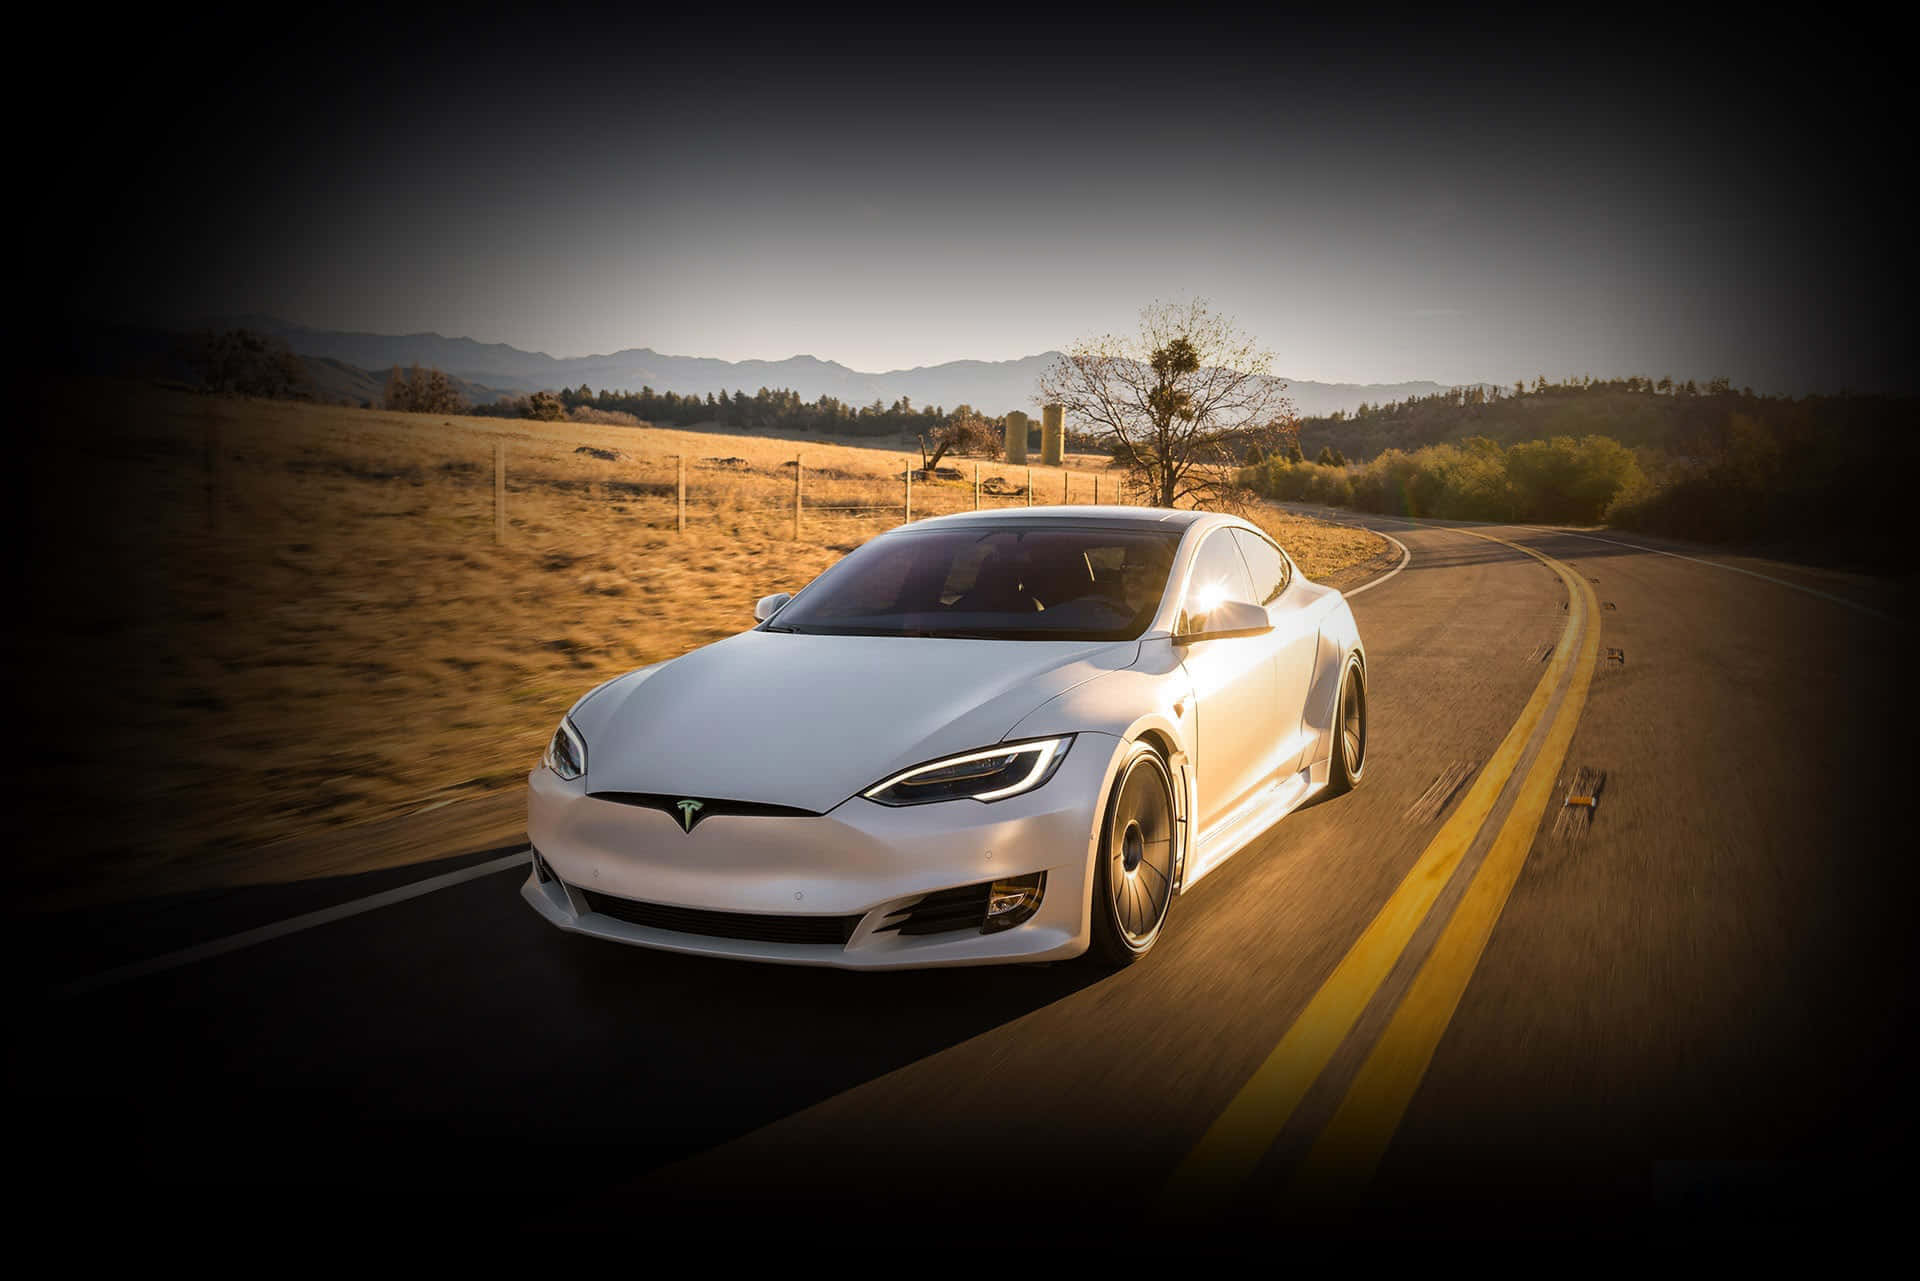 Loscoches Eléctricos De Tesla Están Estableciendo El Nuevo Estándar Para El Transporte Ecológico.